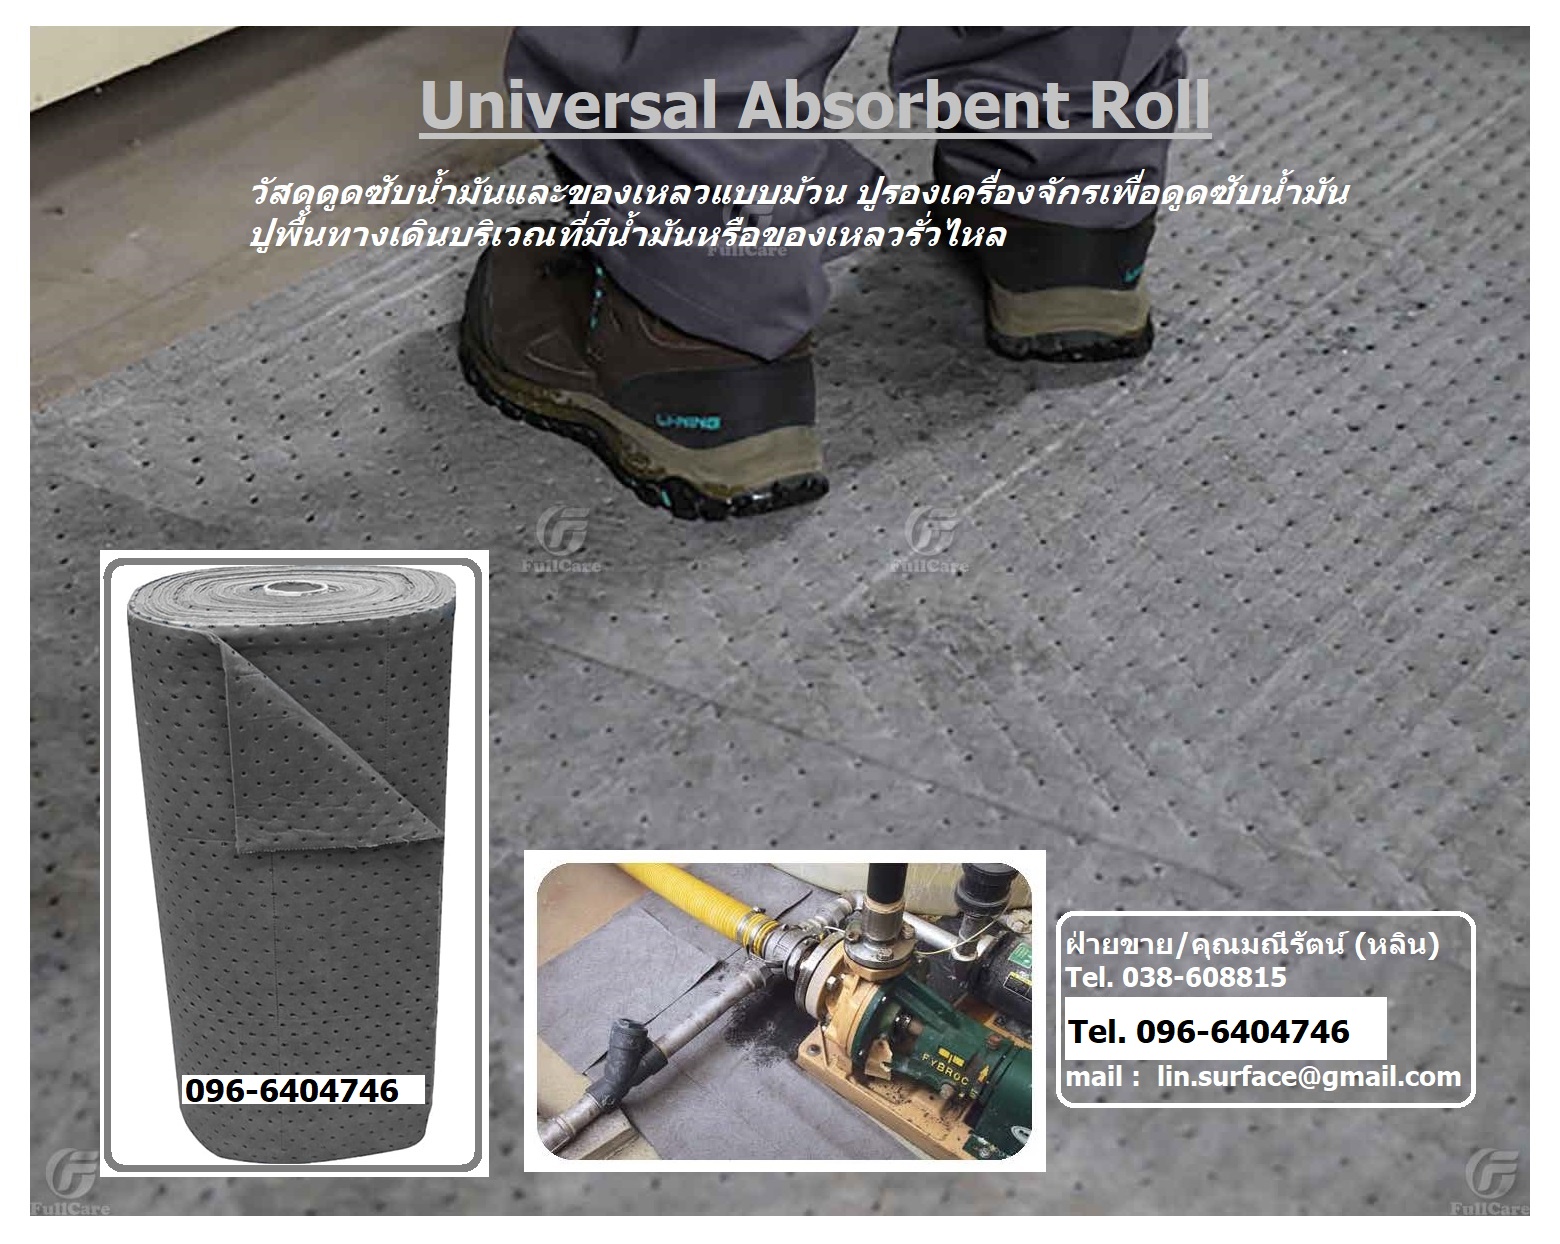 จำหน่าย Universal Absorbent Roll แผ่นวัสดุดูดซับของเหลวแบบม้วน ดูดซับน้ำมันและสารเคมีบางชนิด (โทร.038-608815, 096-6404746) รูปที่ 1